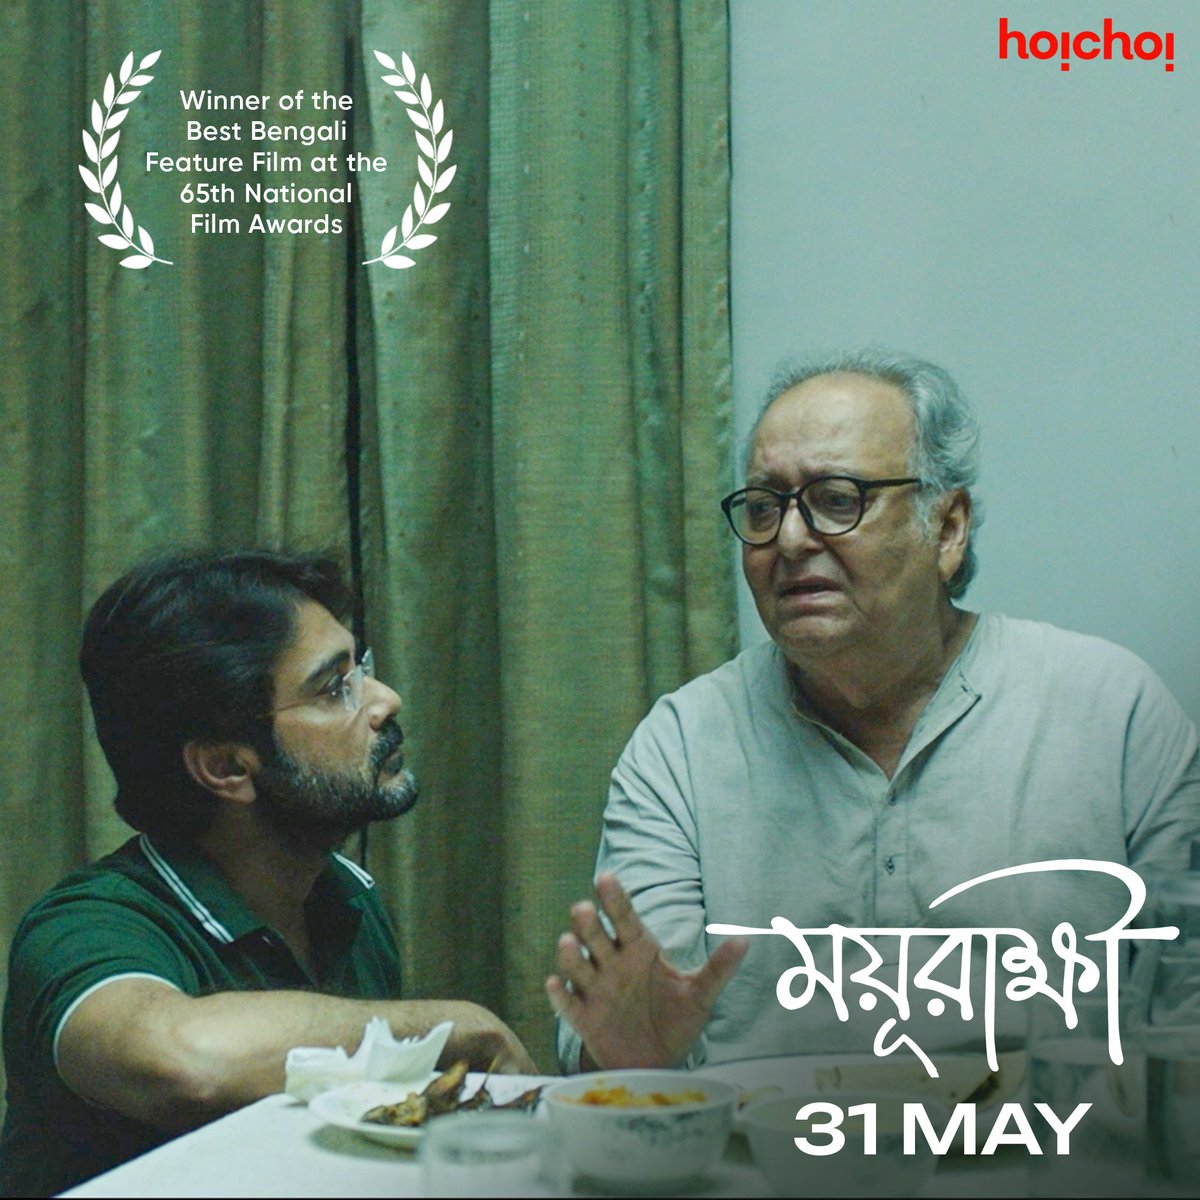 এক পিতা-পুত্রের সম্পর্কের গল্প আসছে এবার হইচই-এর পর্দায়! Winner of the Best Bengali Feature Film at the 65th National Film Awards, #Mayurakshi directed by #AtanuGhosh premieres 31st May, only on #hoichoi. @prosenjitbumba #SoumitraChatterjee @FriendsCommKol #NewOnhoichoi